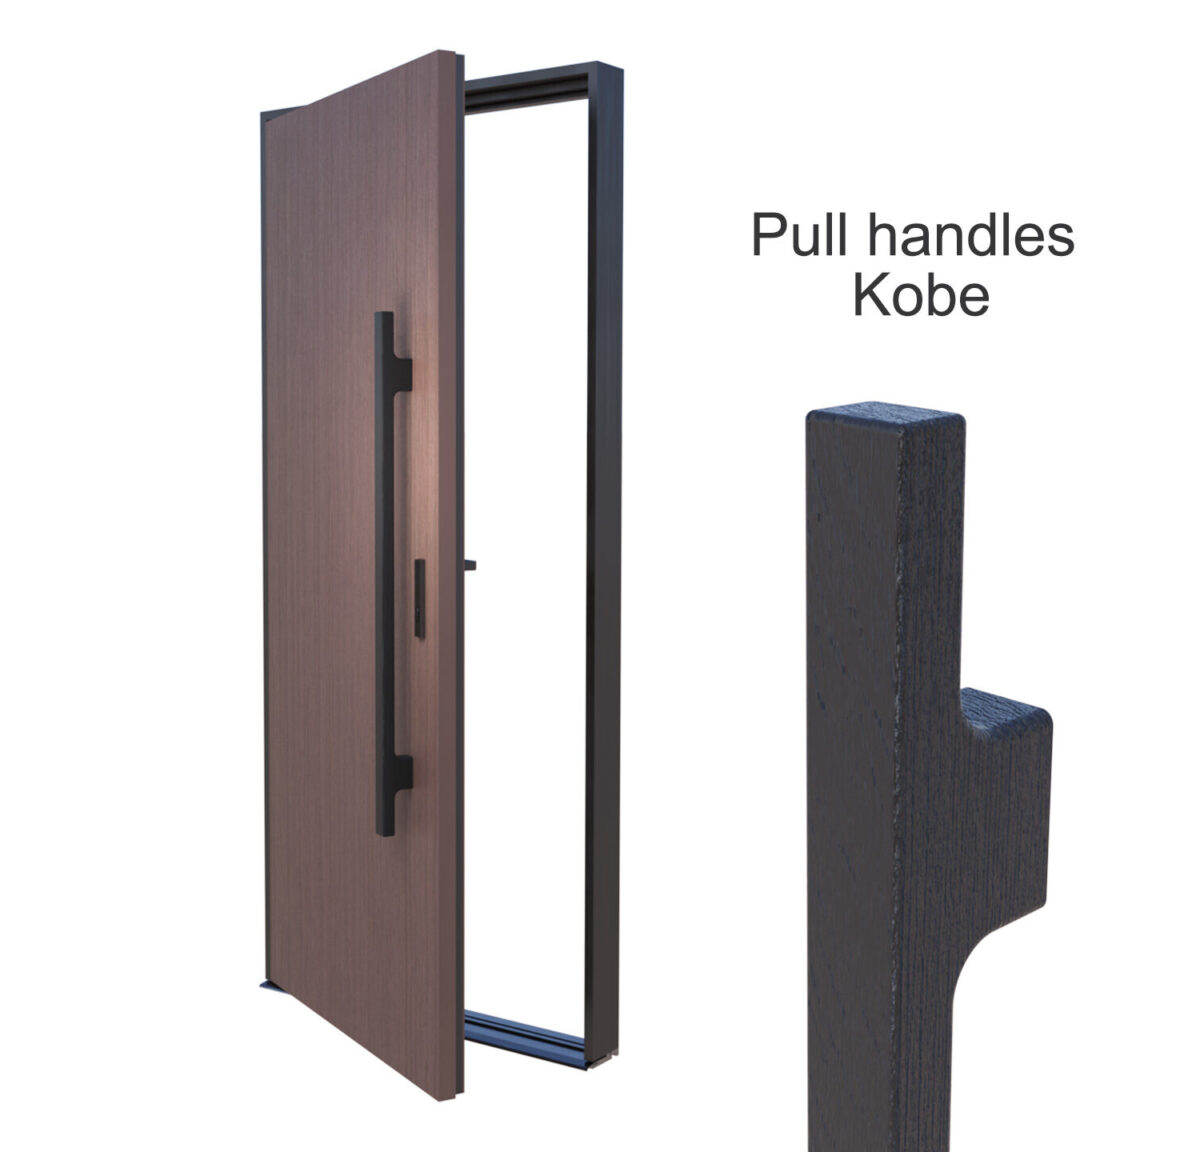 Direct wooden pull handles KOBE of front door